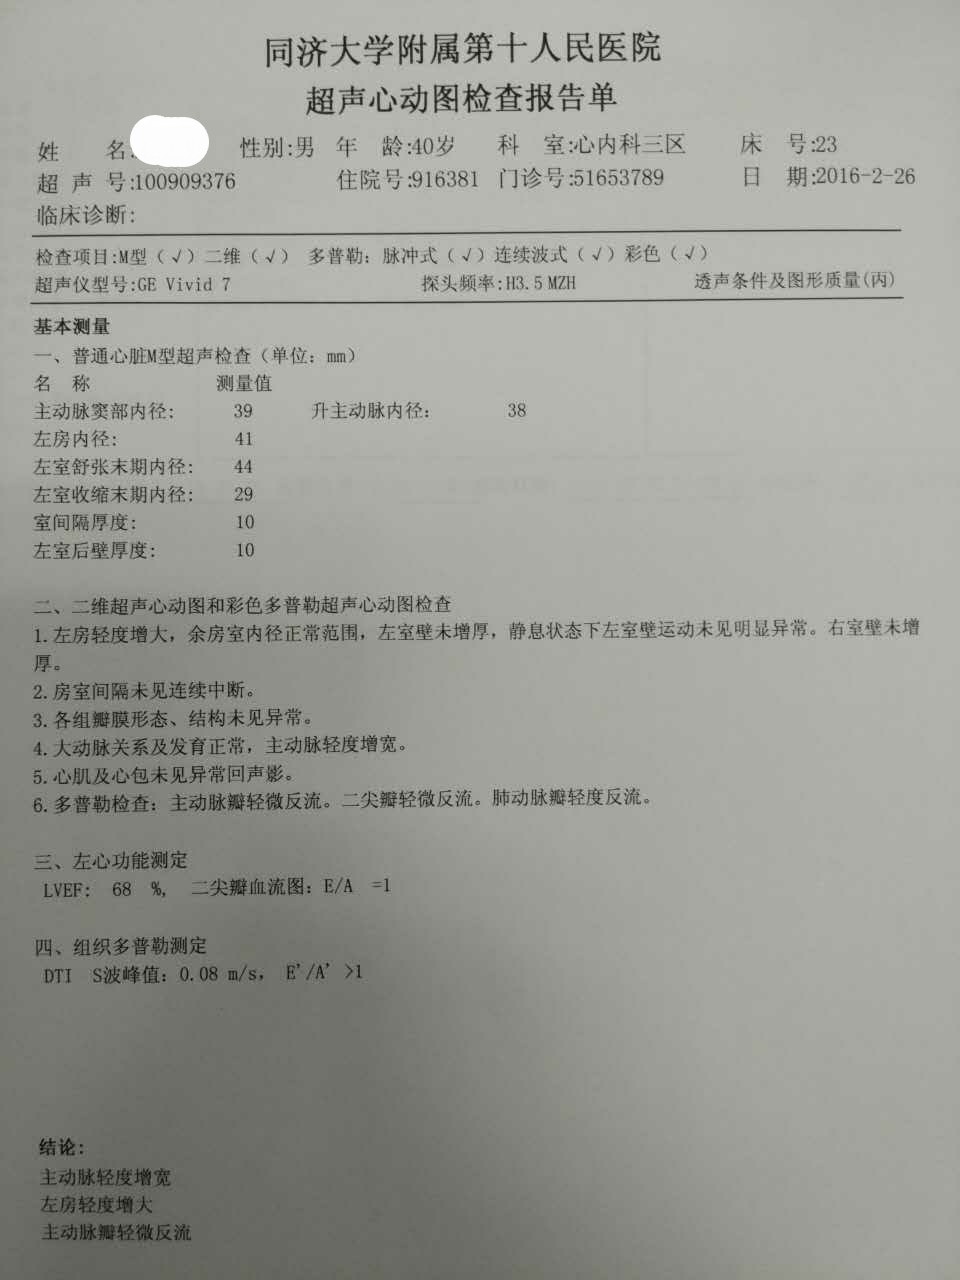 中青年高血压标准化诊治一例丨上海市第十人民医院 张毅